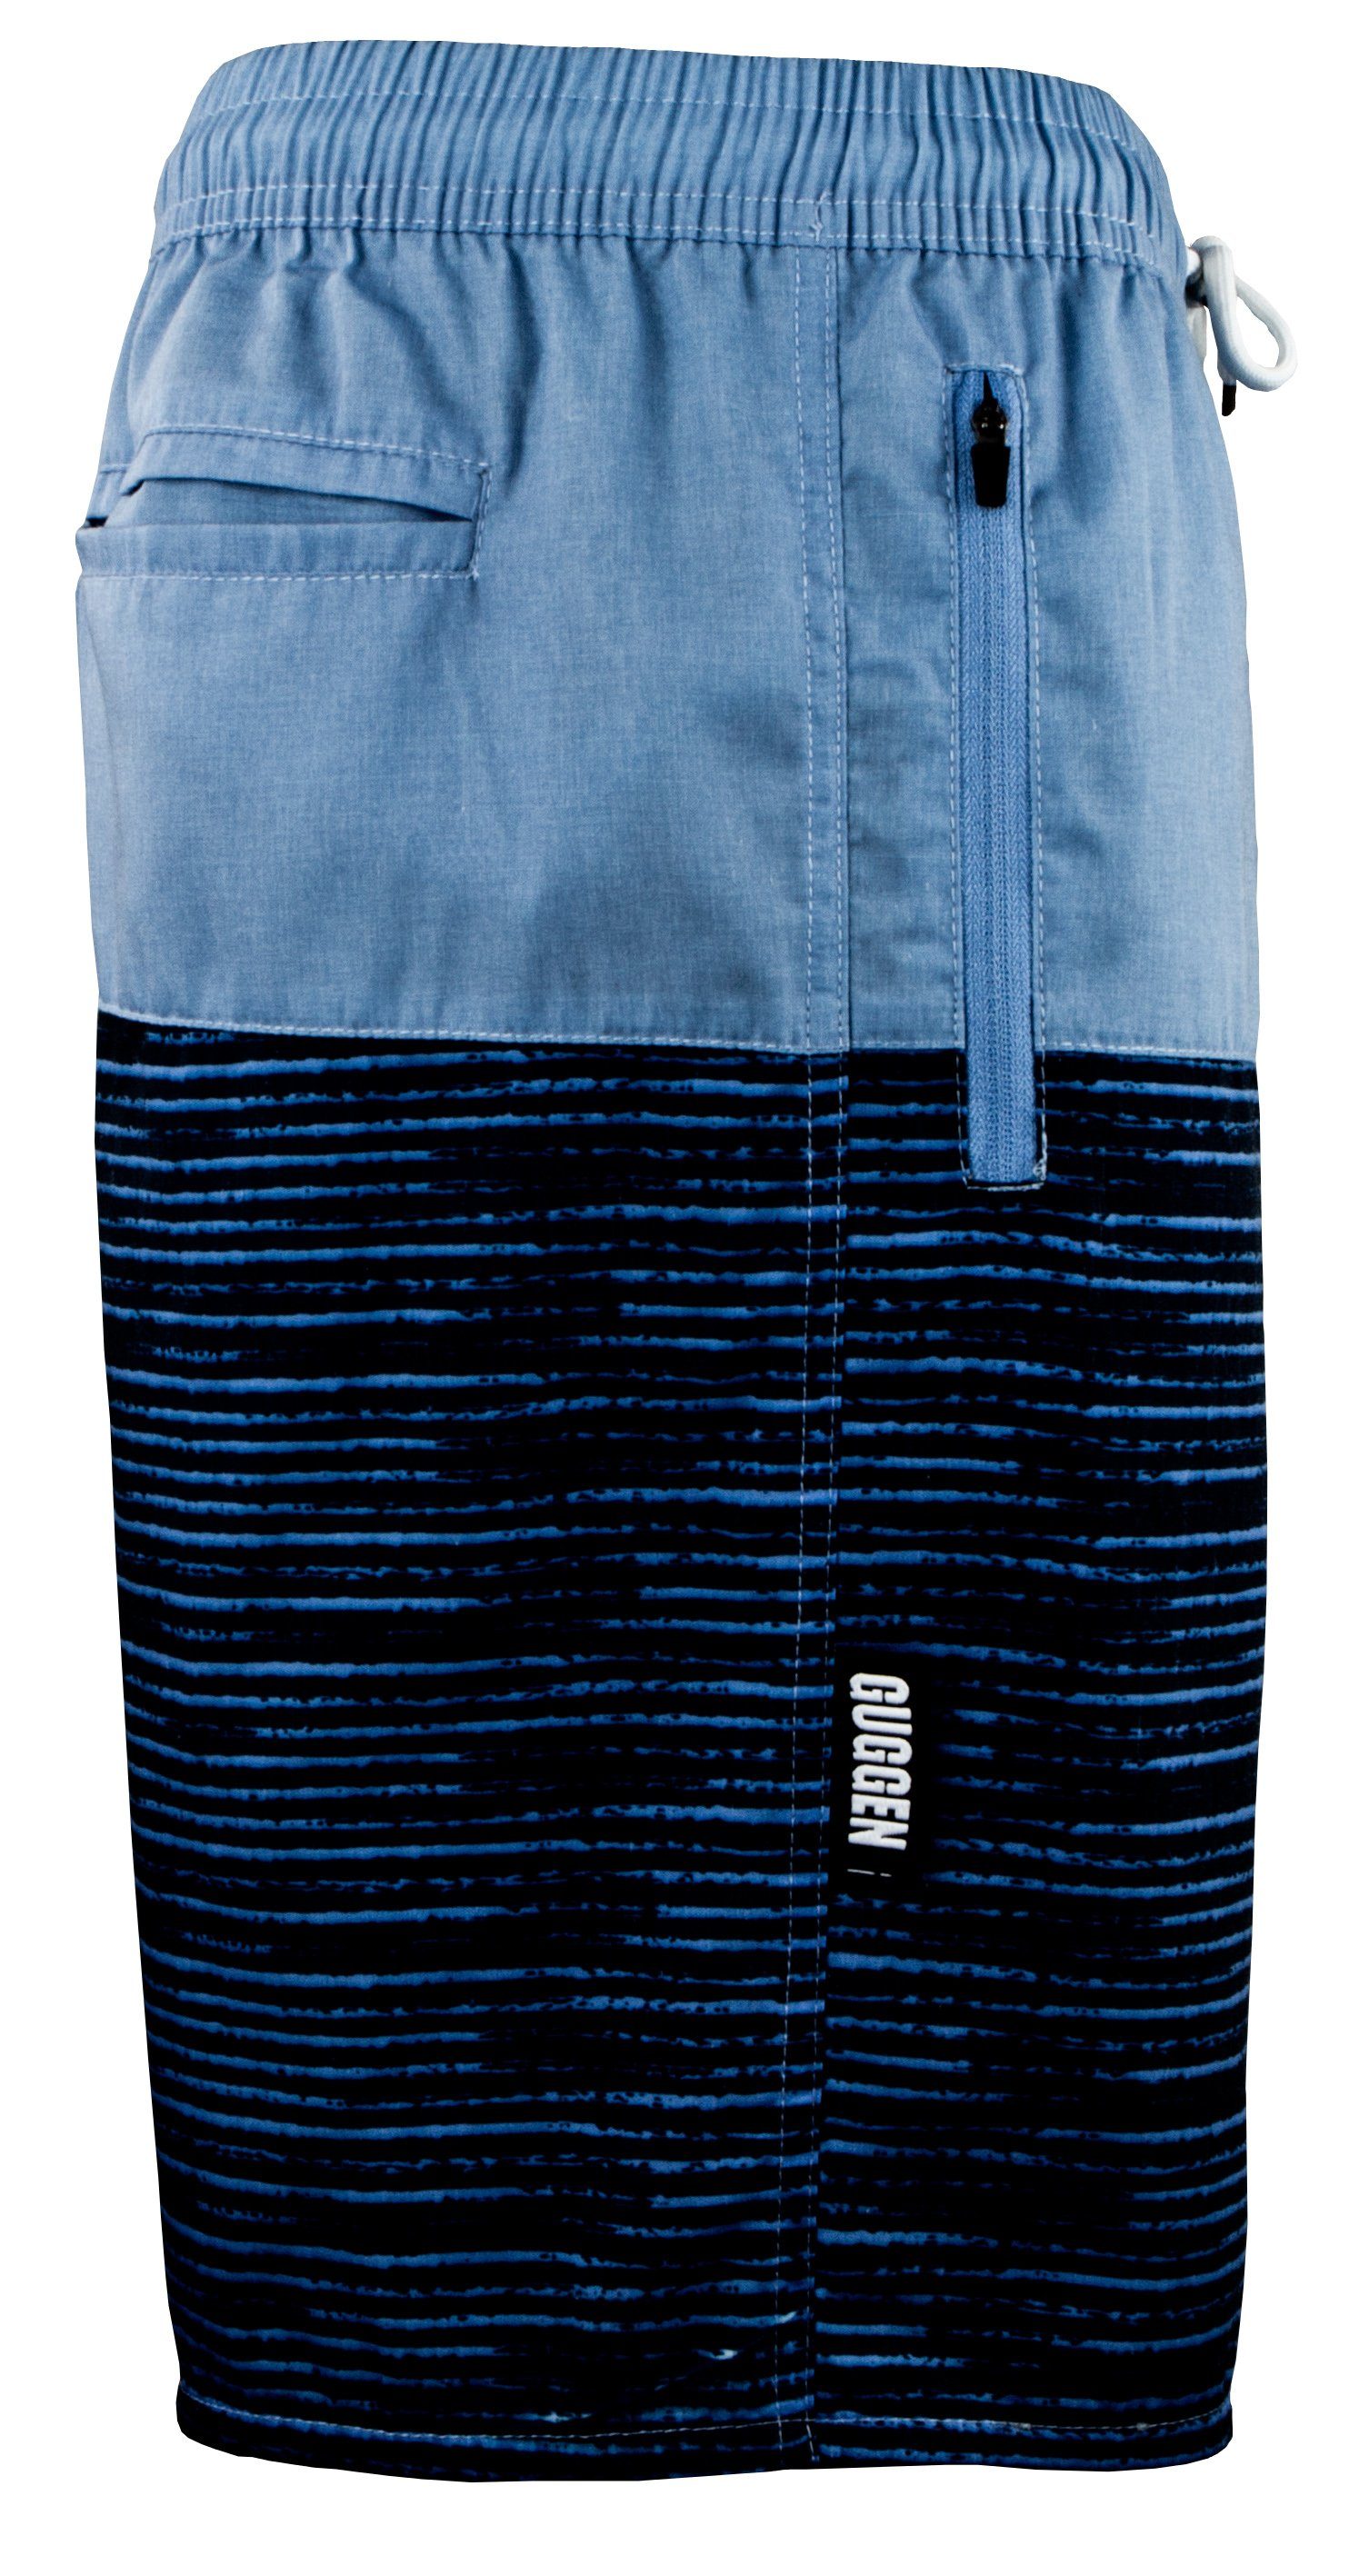 und Blau-Schwarz Reißverschluss Taschen, Herren Mountain Kordelzug Baumwollanteil Badeshorts Schnelltrocknende GUGGEN Badehose mit 1803-4 Badeshorts Badehose